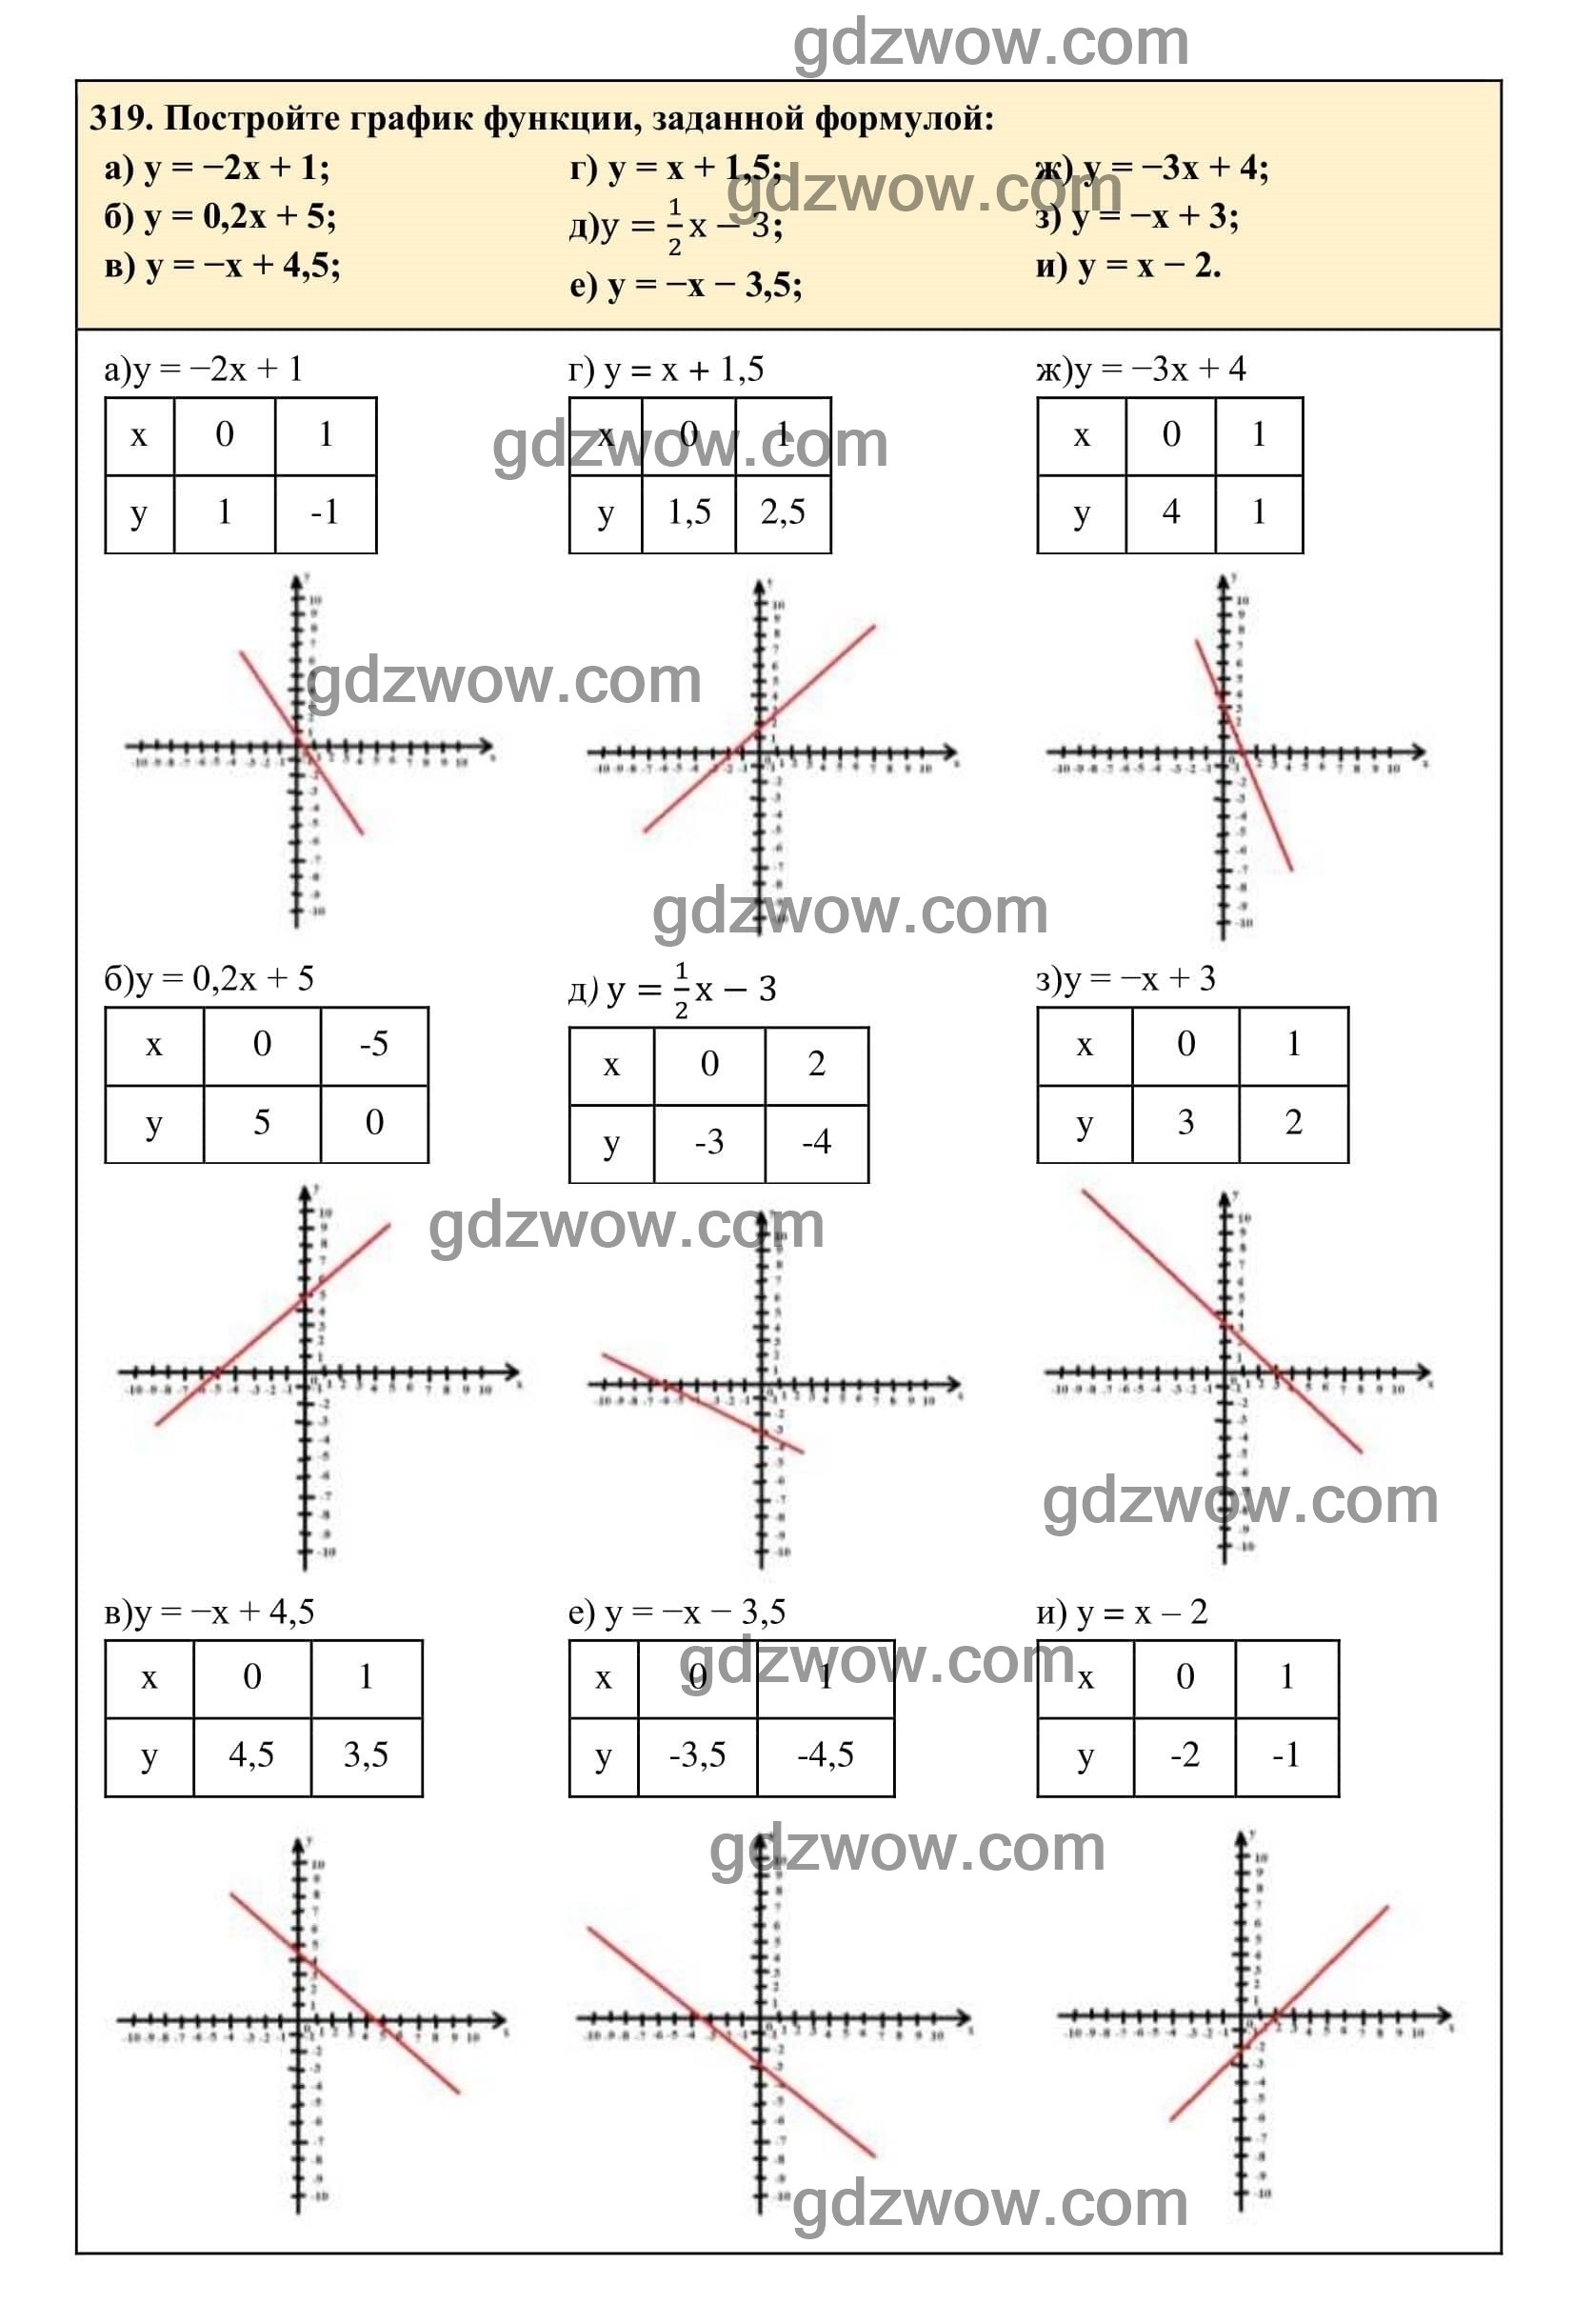 Упражнение 319 - ГДЗ по Алгебре 7 класс Учебник Макарычев (решебник) - GDZwow